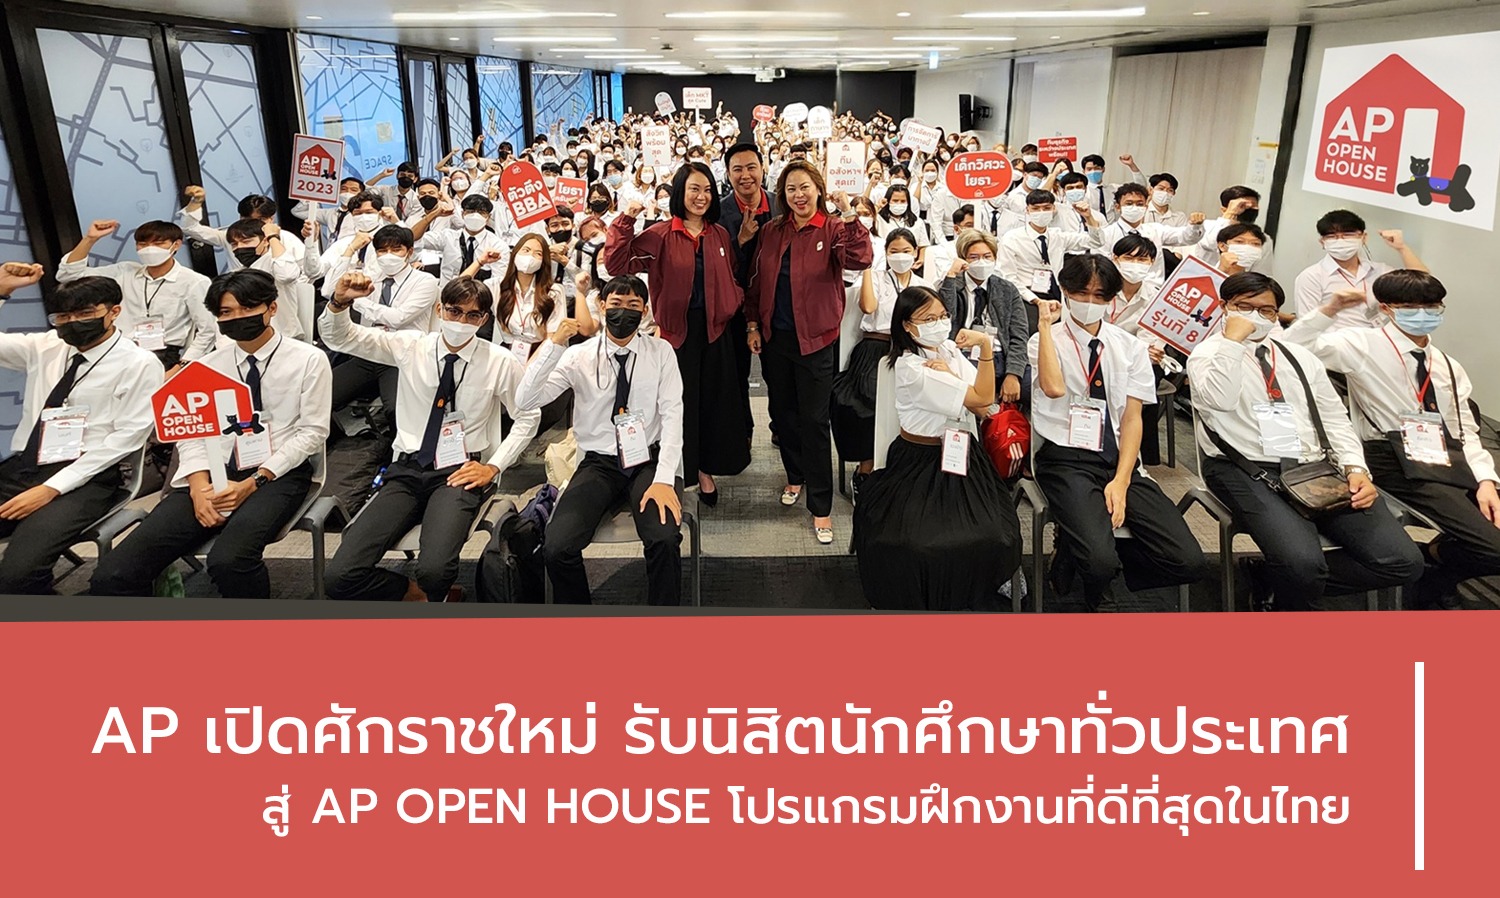 AP เปิดศักราชใหม่ รับนิสิตนักศึกษาทั่วประเทศ สู่ AP OPEN HOUSE โปรแกรมฝึกงานที่ดีที่สุดในไทย